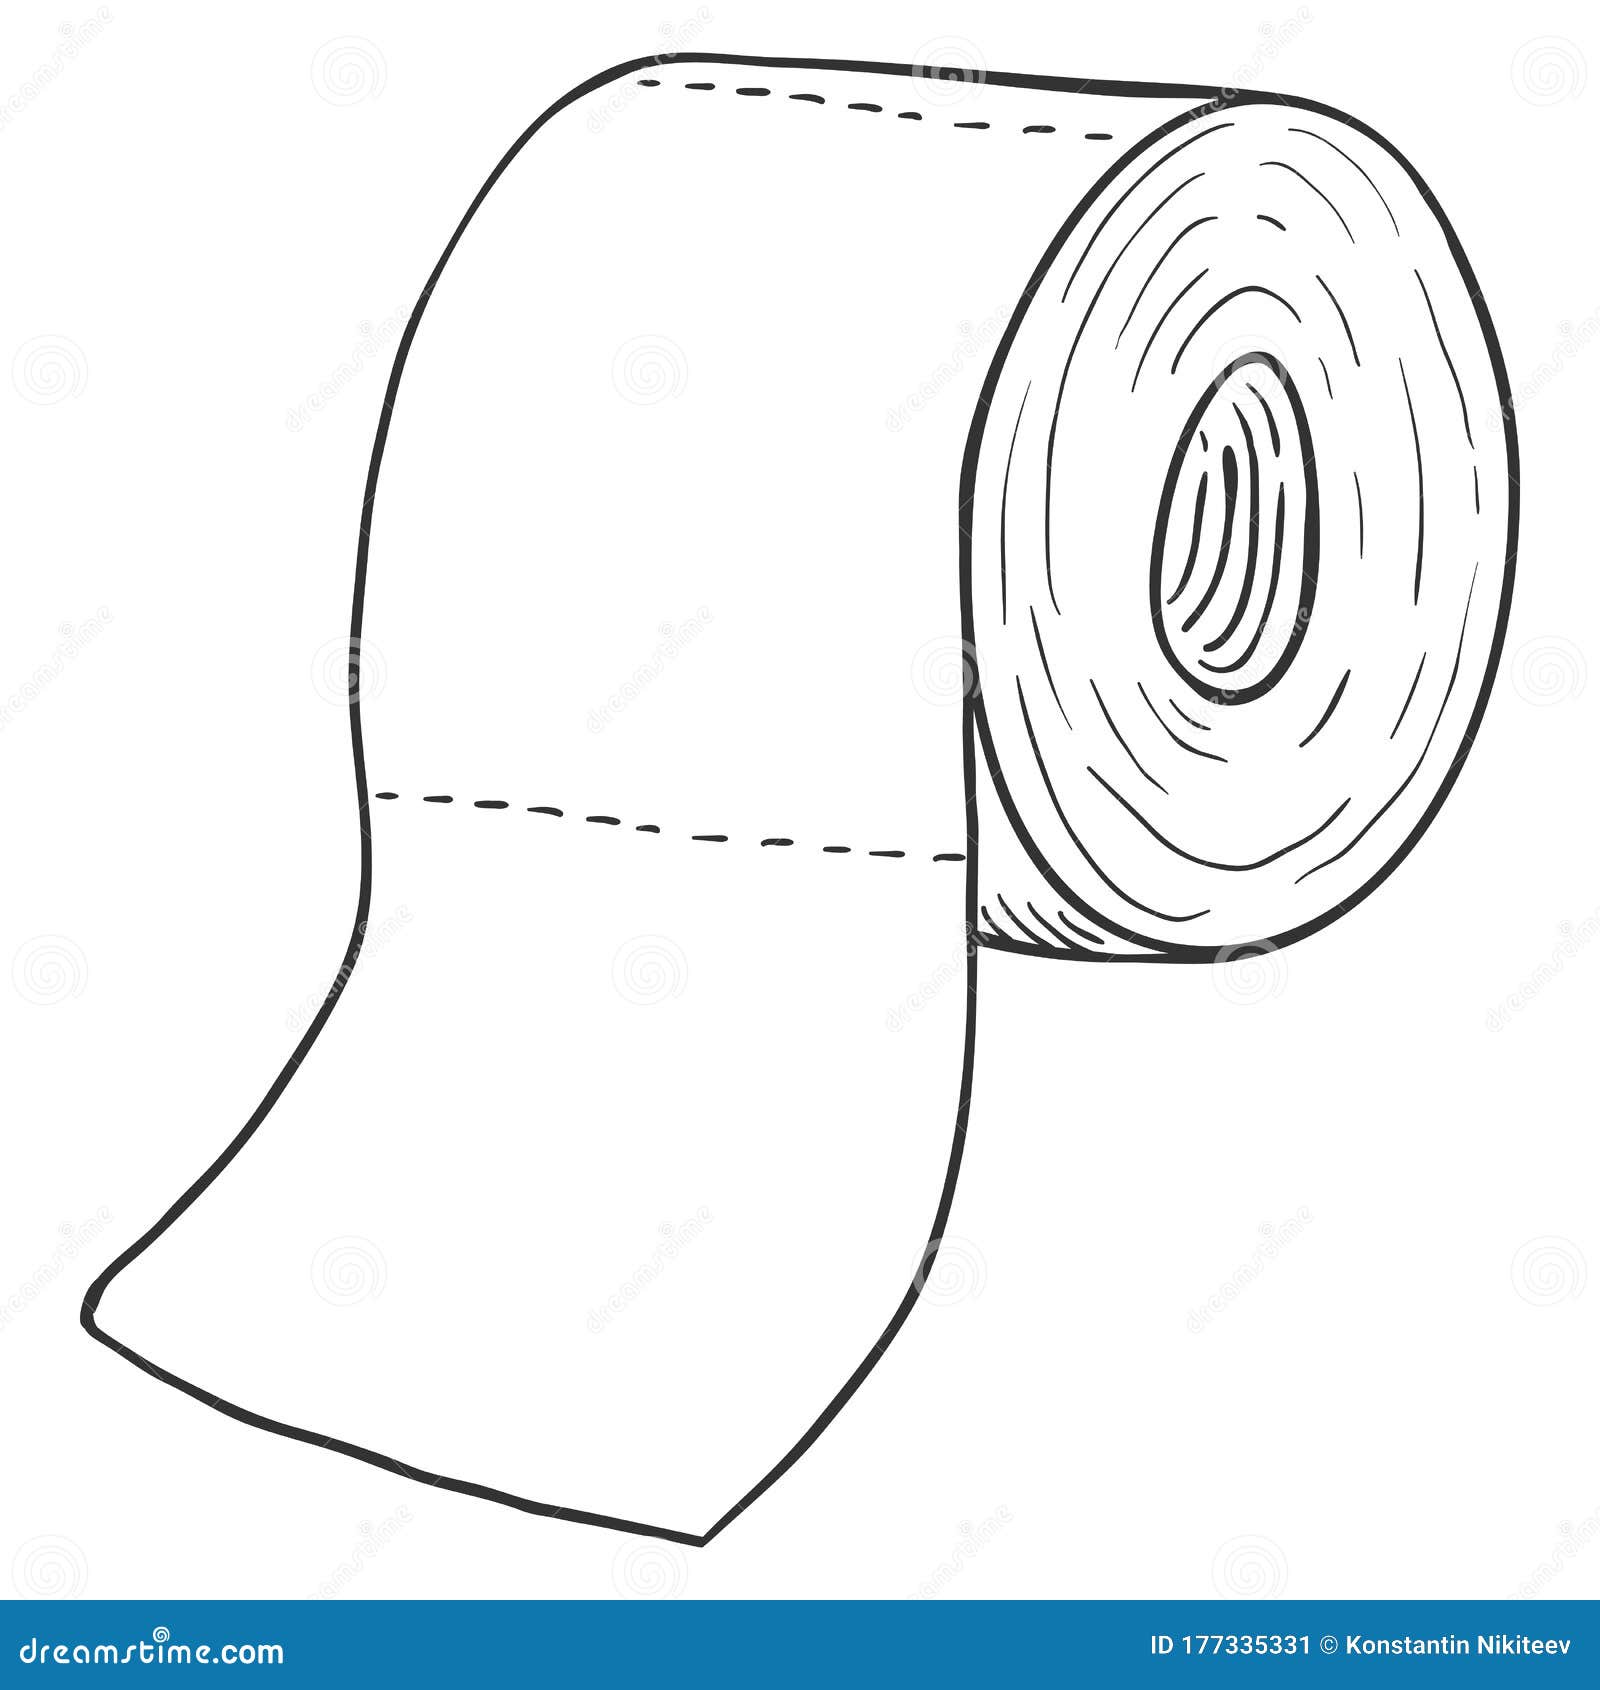 Rouleau De Papier Toilette. Illustration De Croquis De Vecteur De